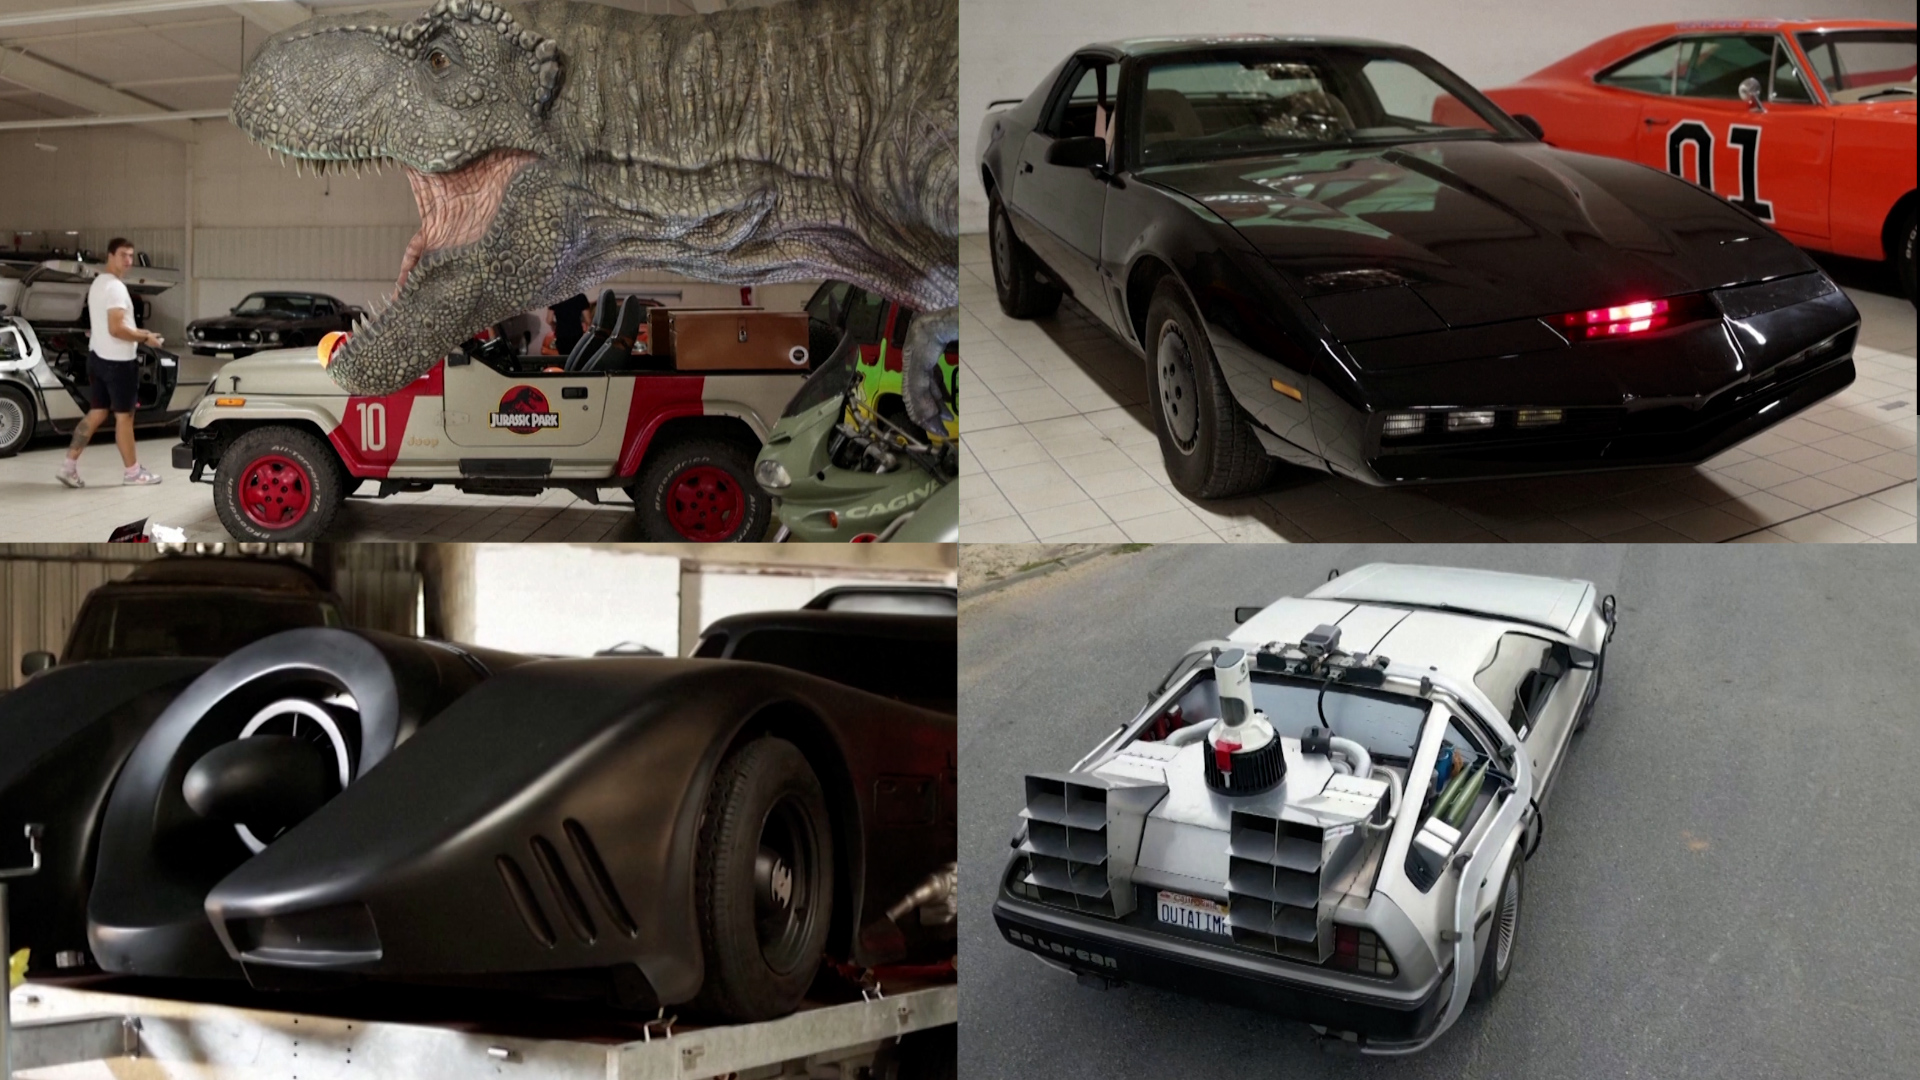 Βίντεο: Οδηγήστε διάσημα αυτοκίνητα του σινεμά όπως ο Κ.Ι.Τ.Τ. και το DeLorean σε γαλλικό μουσείο